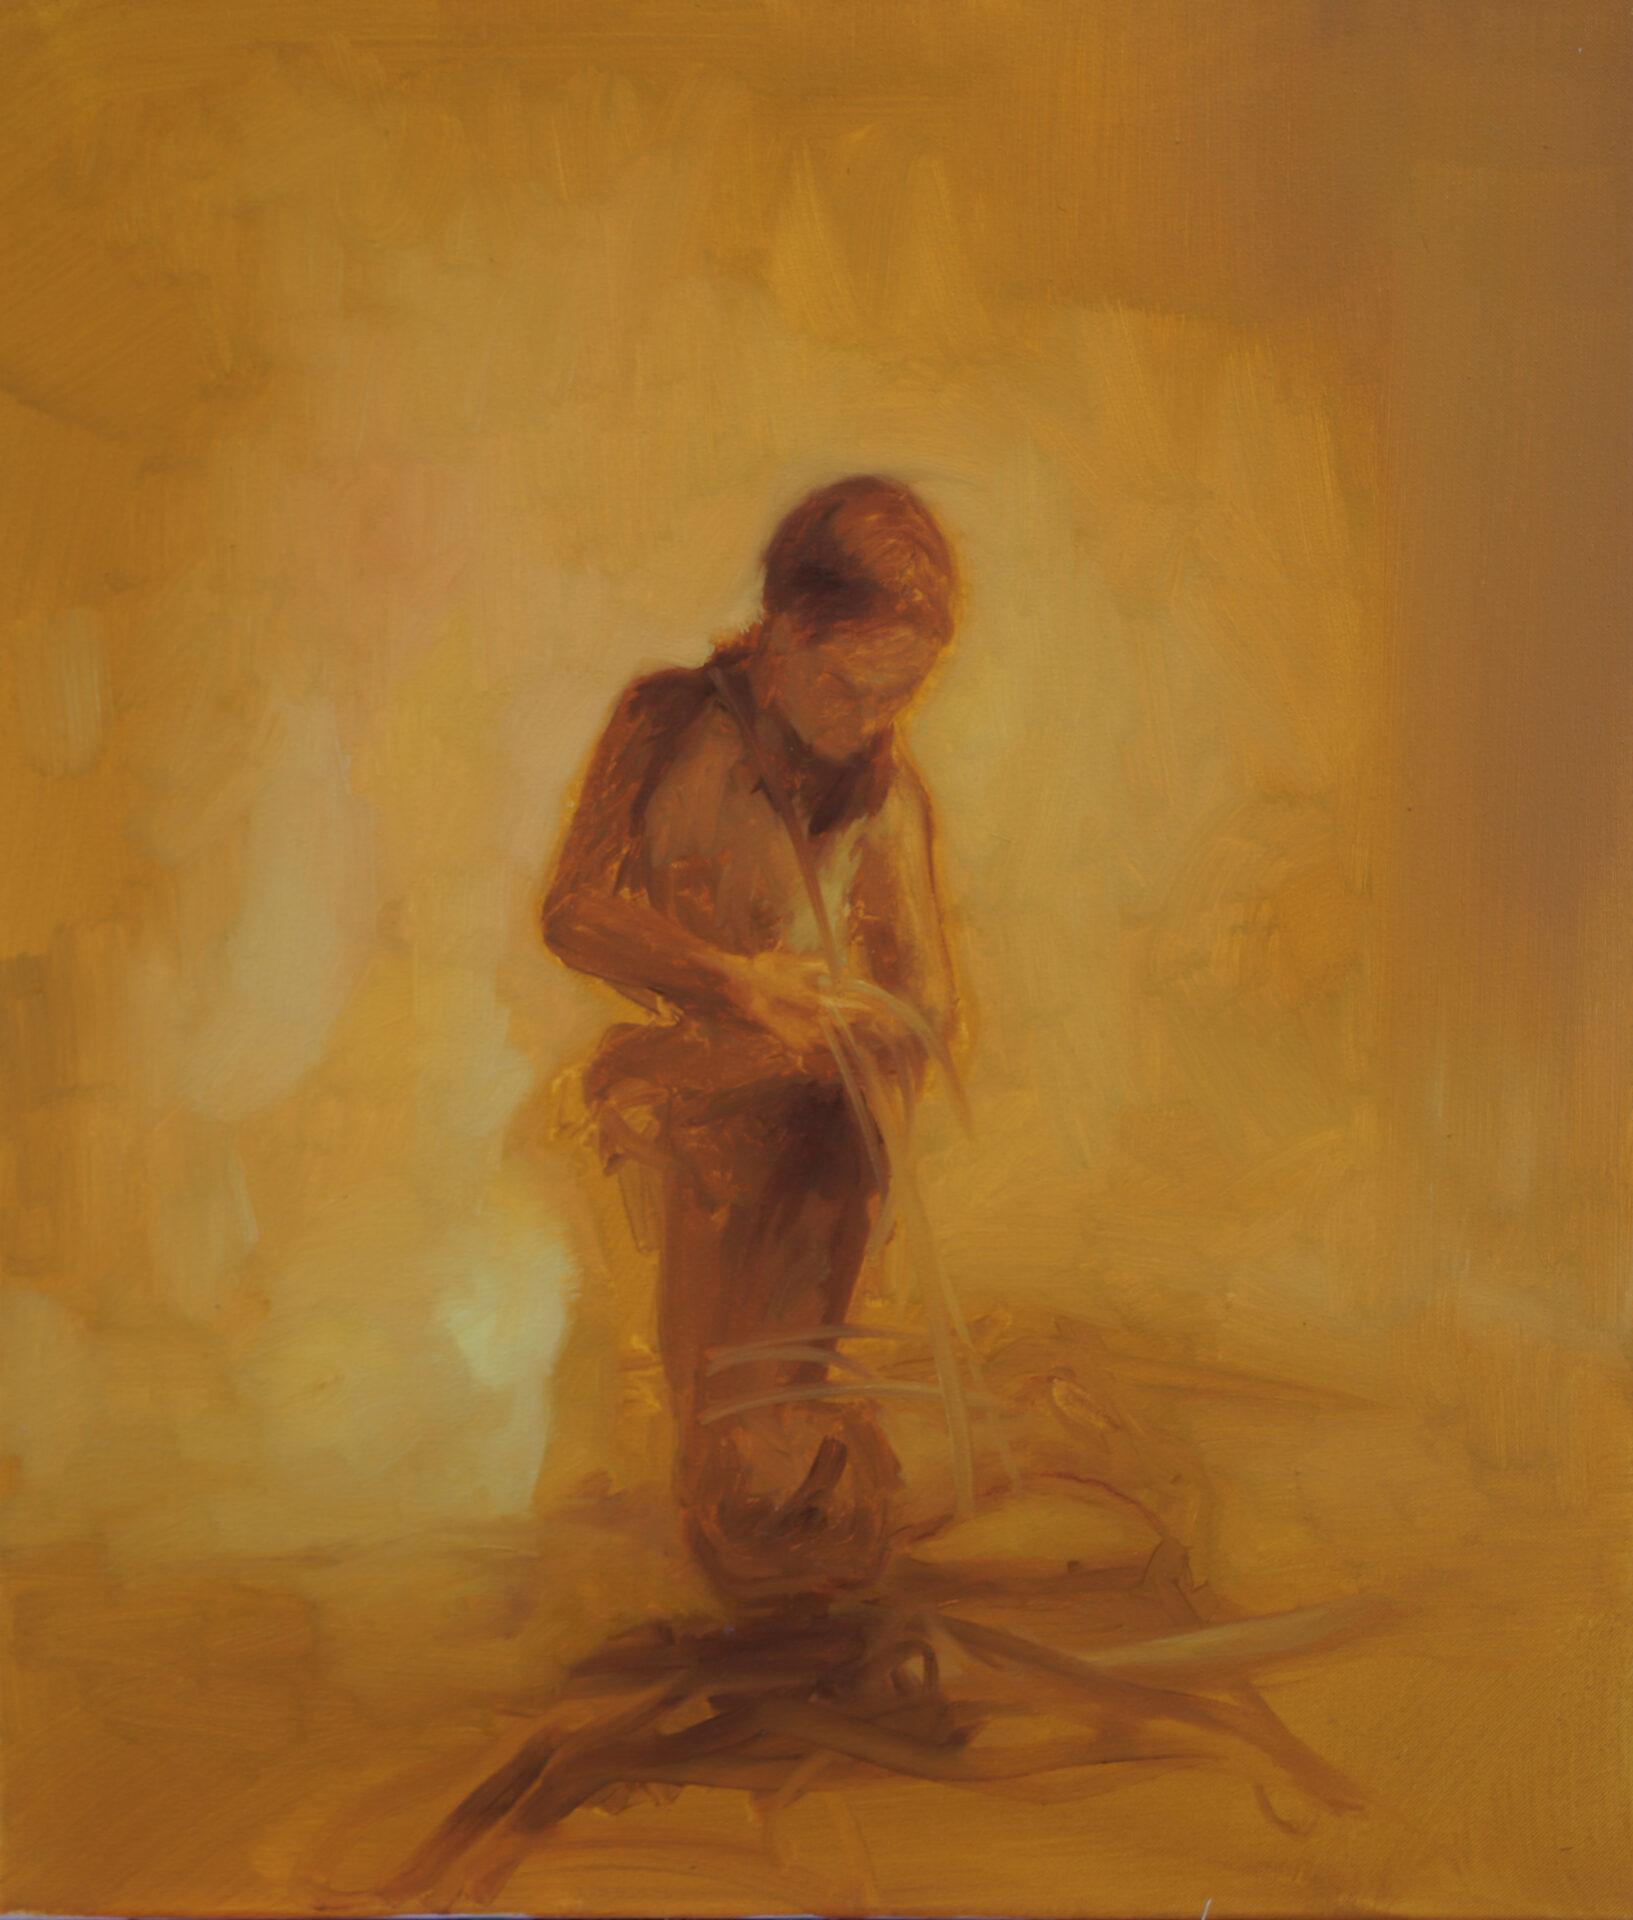 Daniel Beer, SCENIC 20-5, 60 x 50 cm, Öl auf Leinwand, 2020